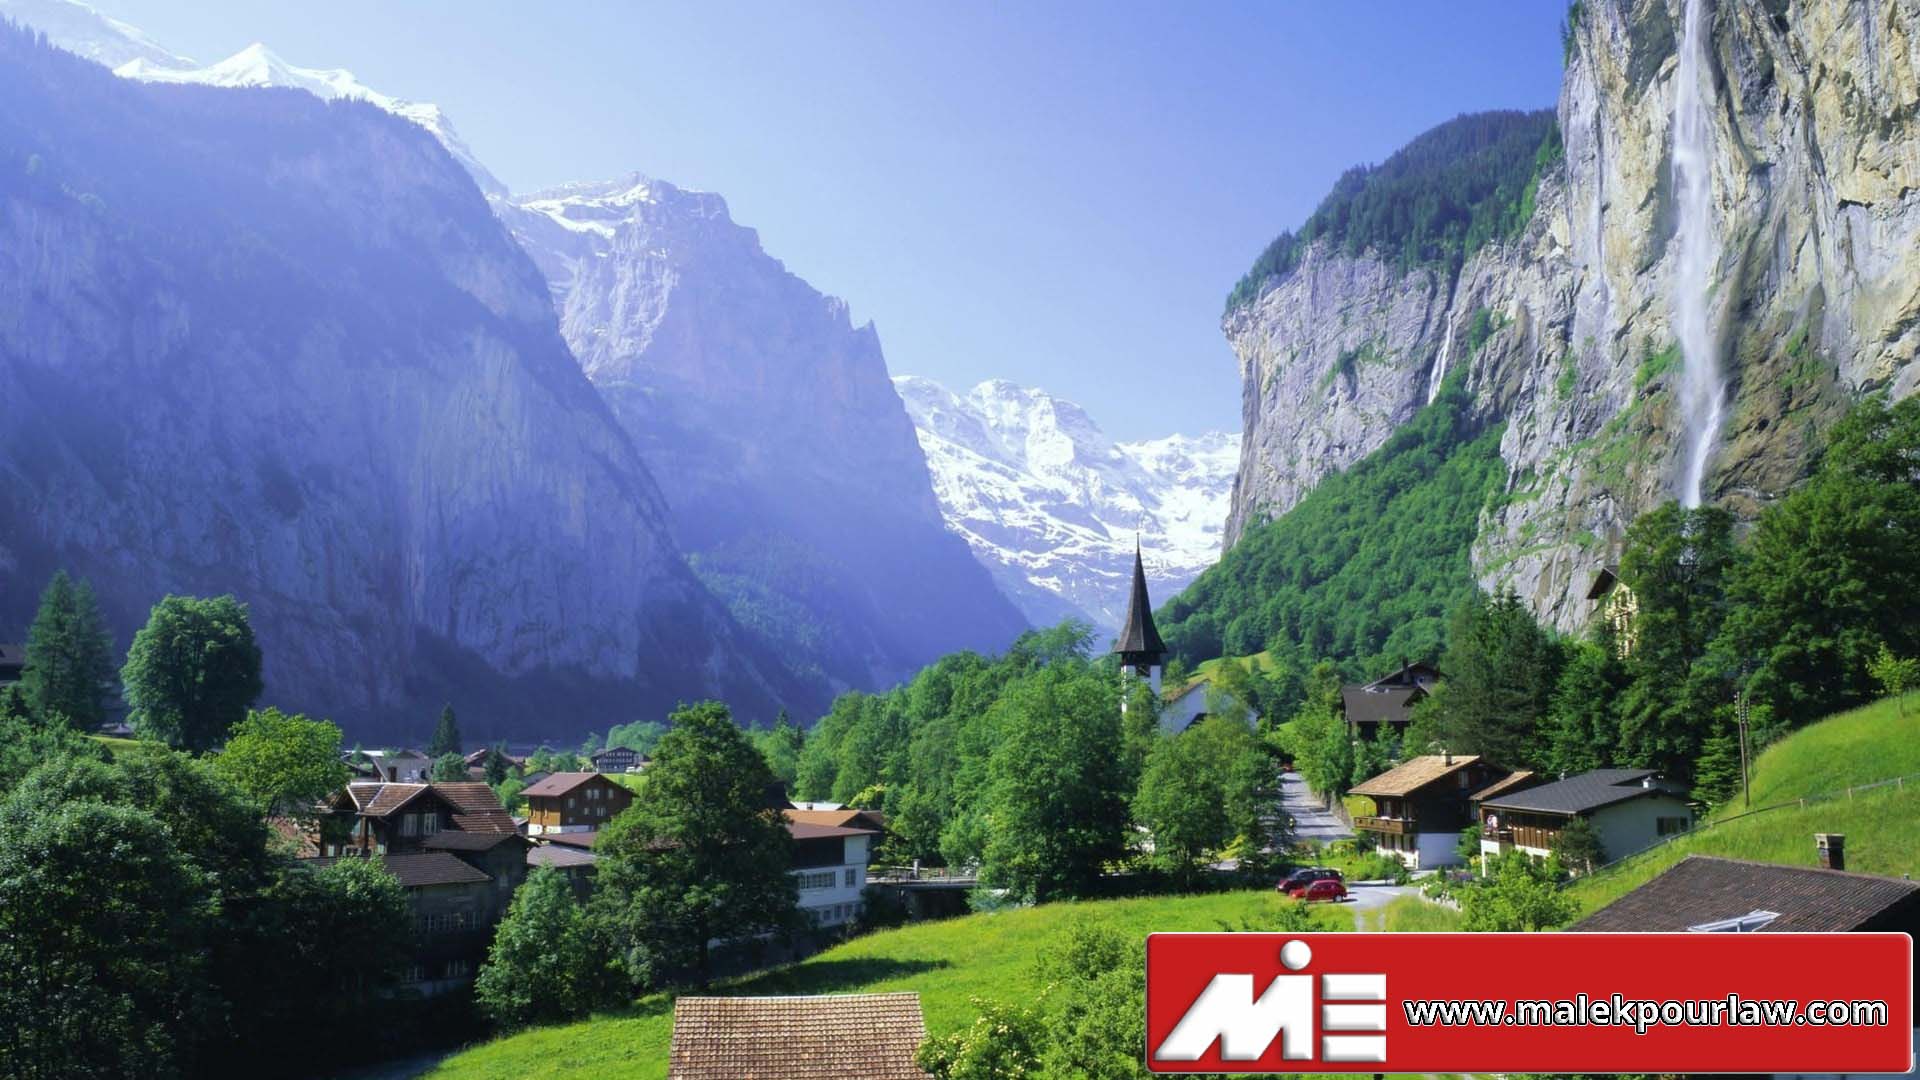 اخذ اقامت کاری سوئیس - کشور سوئیس - سوئیس کجاست - کار در سوئیس